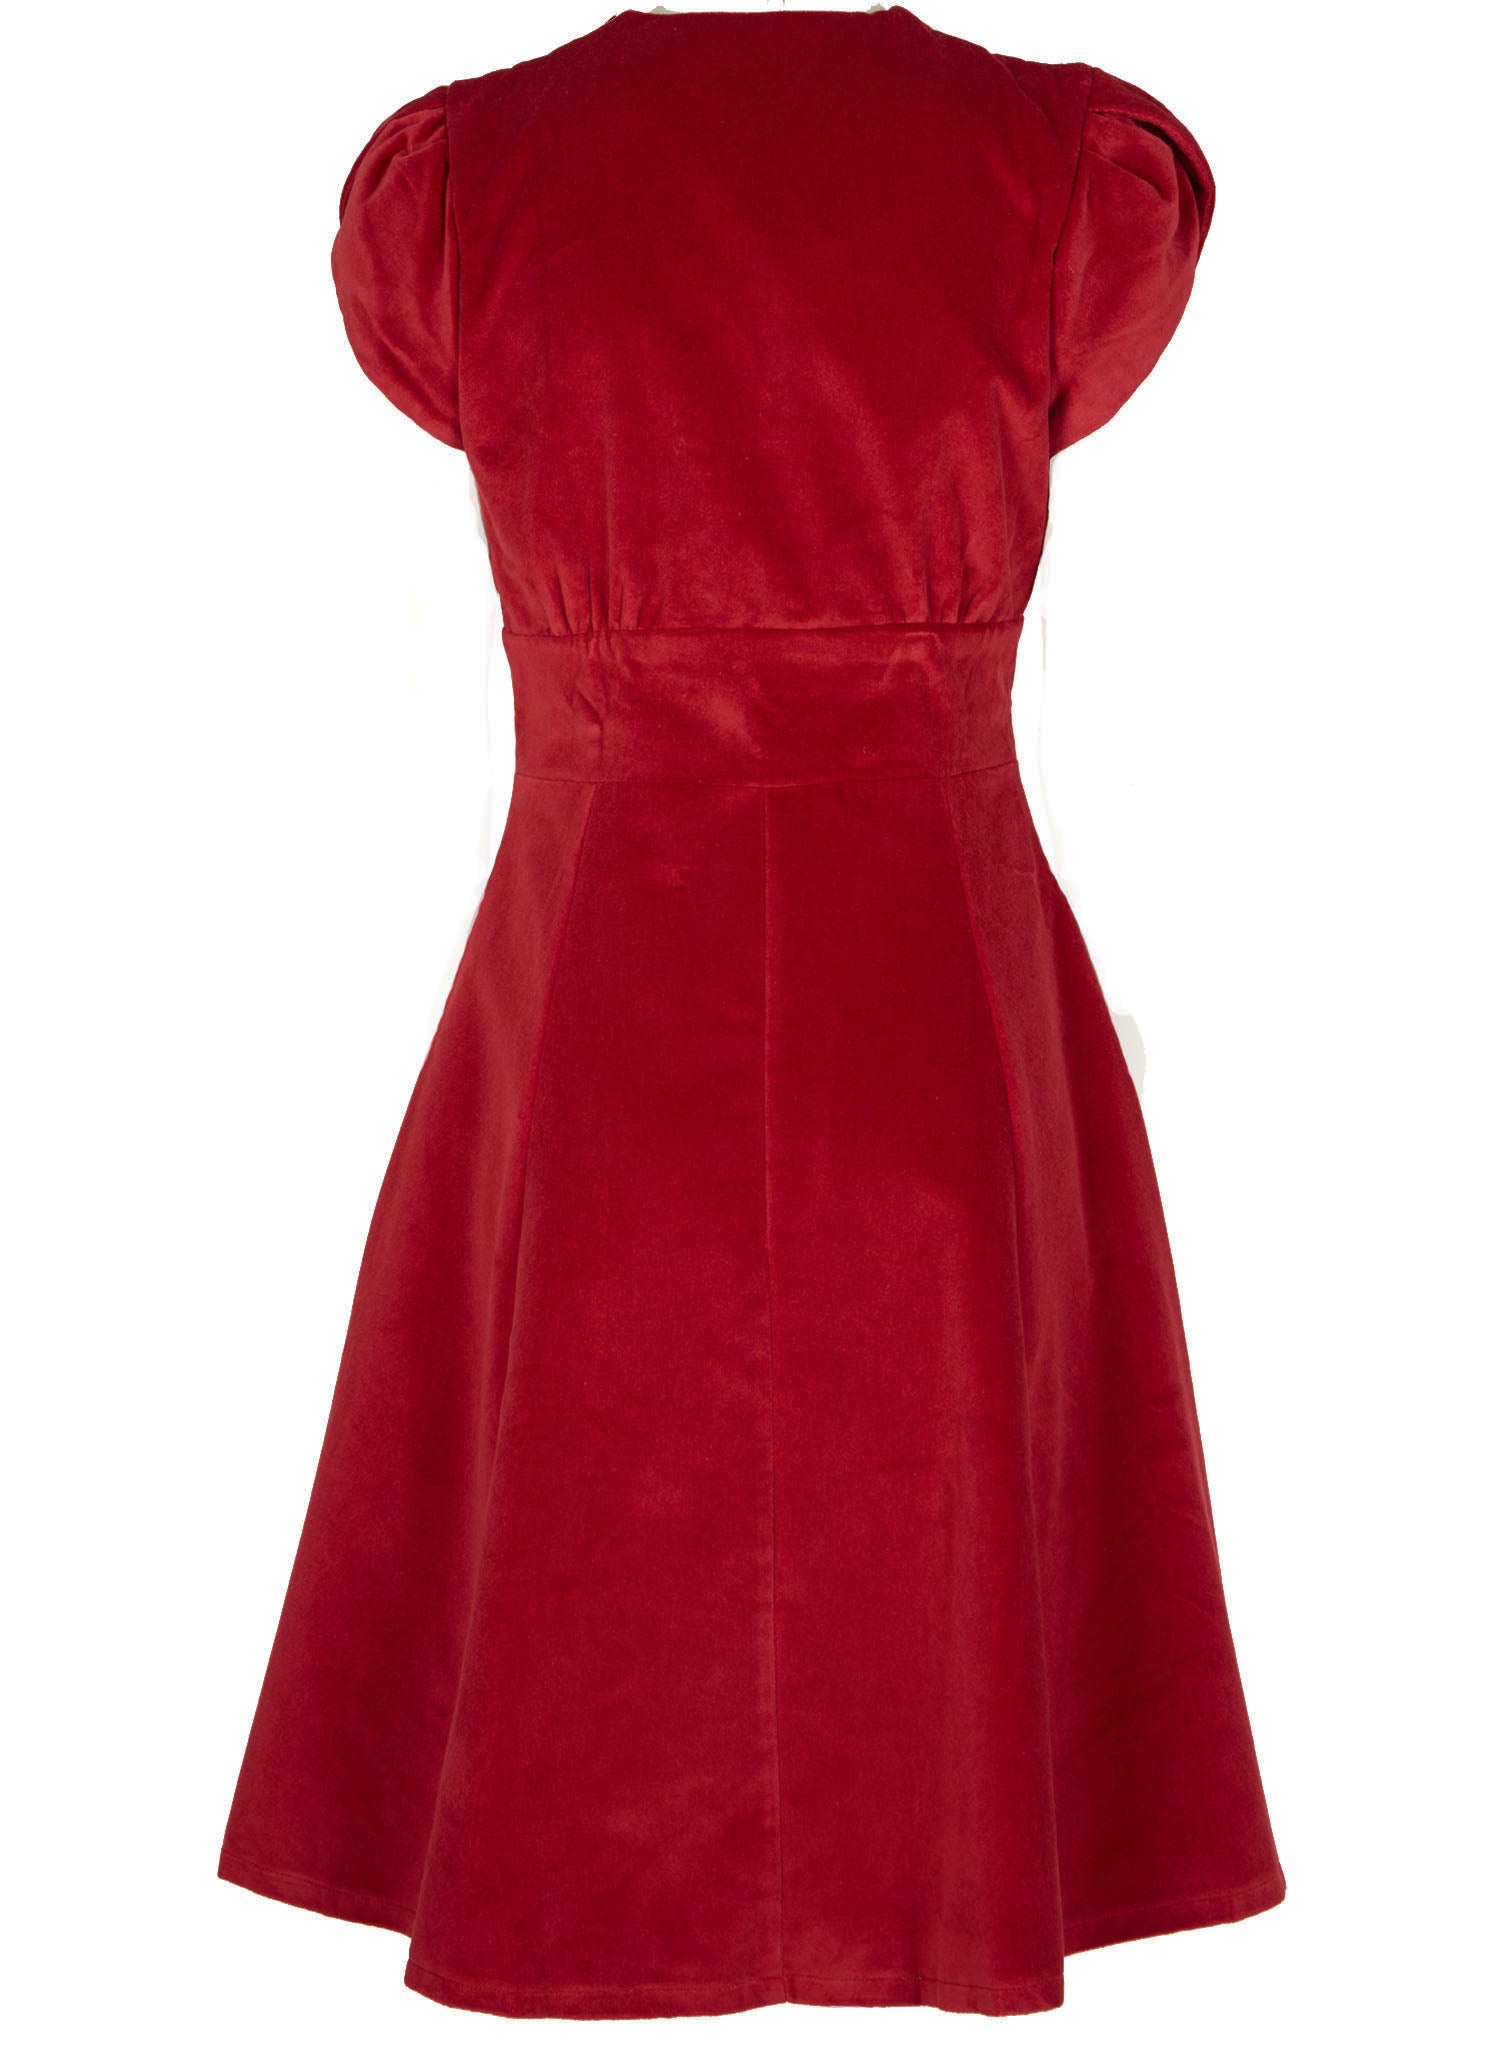 Rita - Claret Velvet Dress